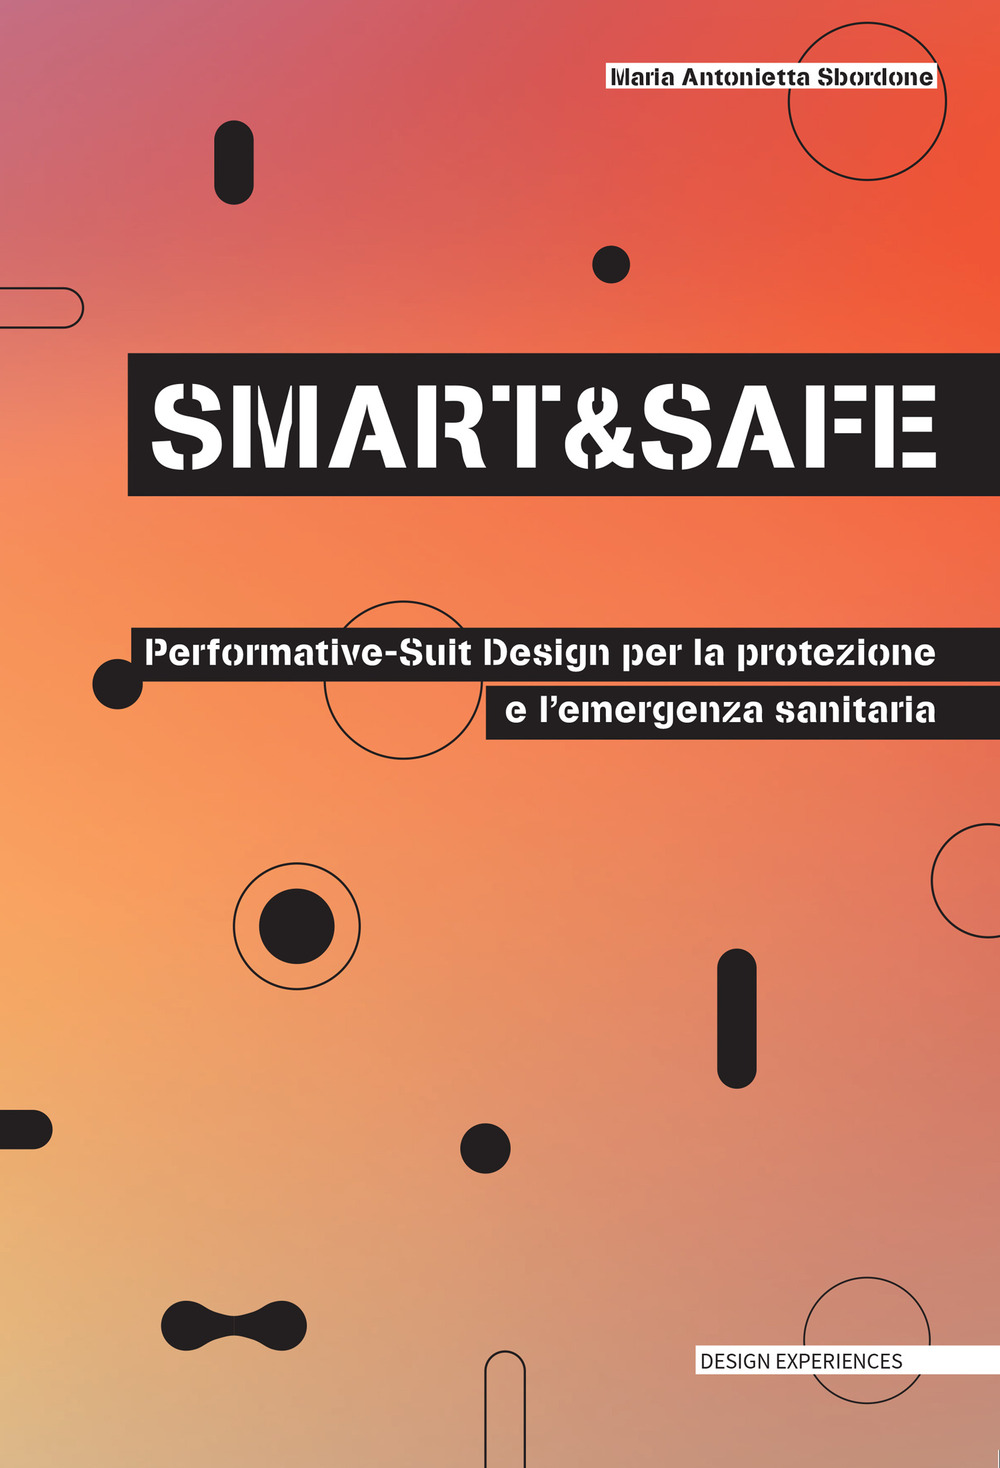 Smart and safe. Performative-suit design per la protezione e l'emergenza sanitaria